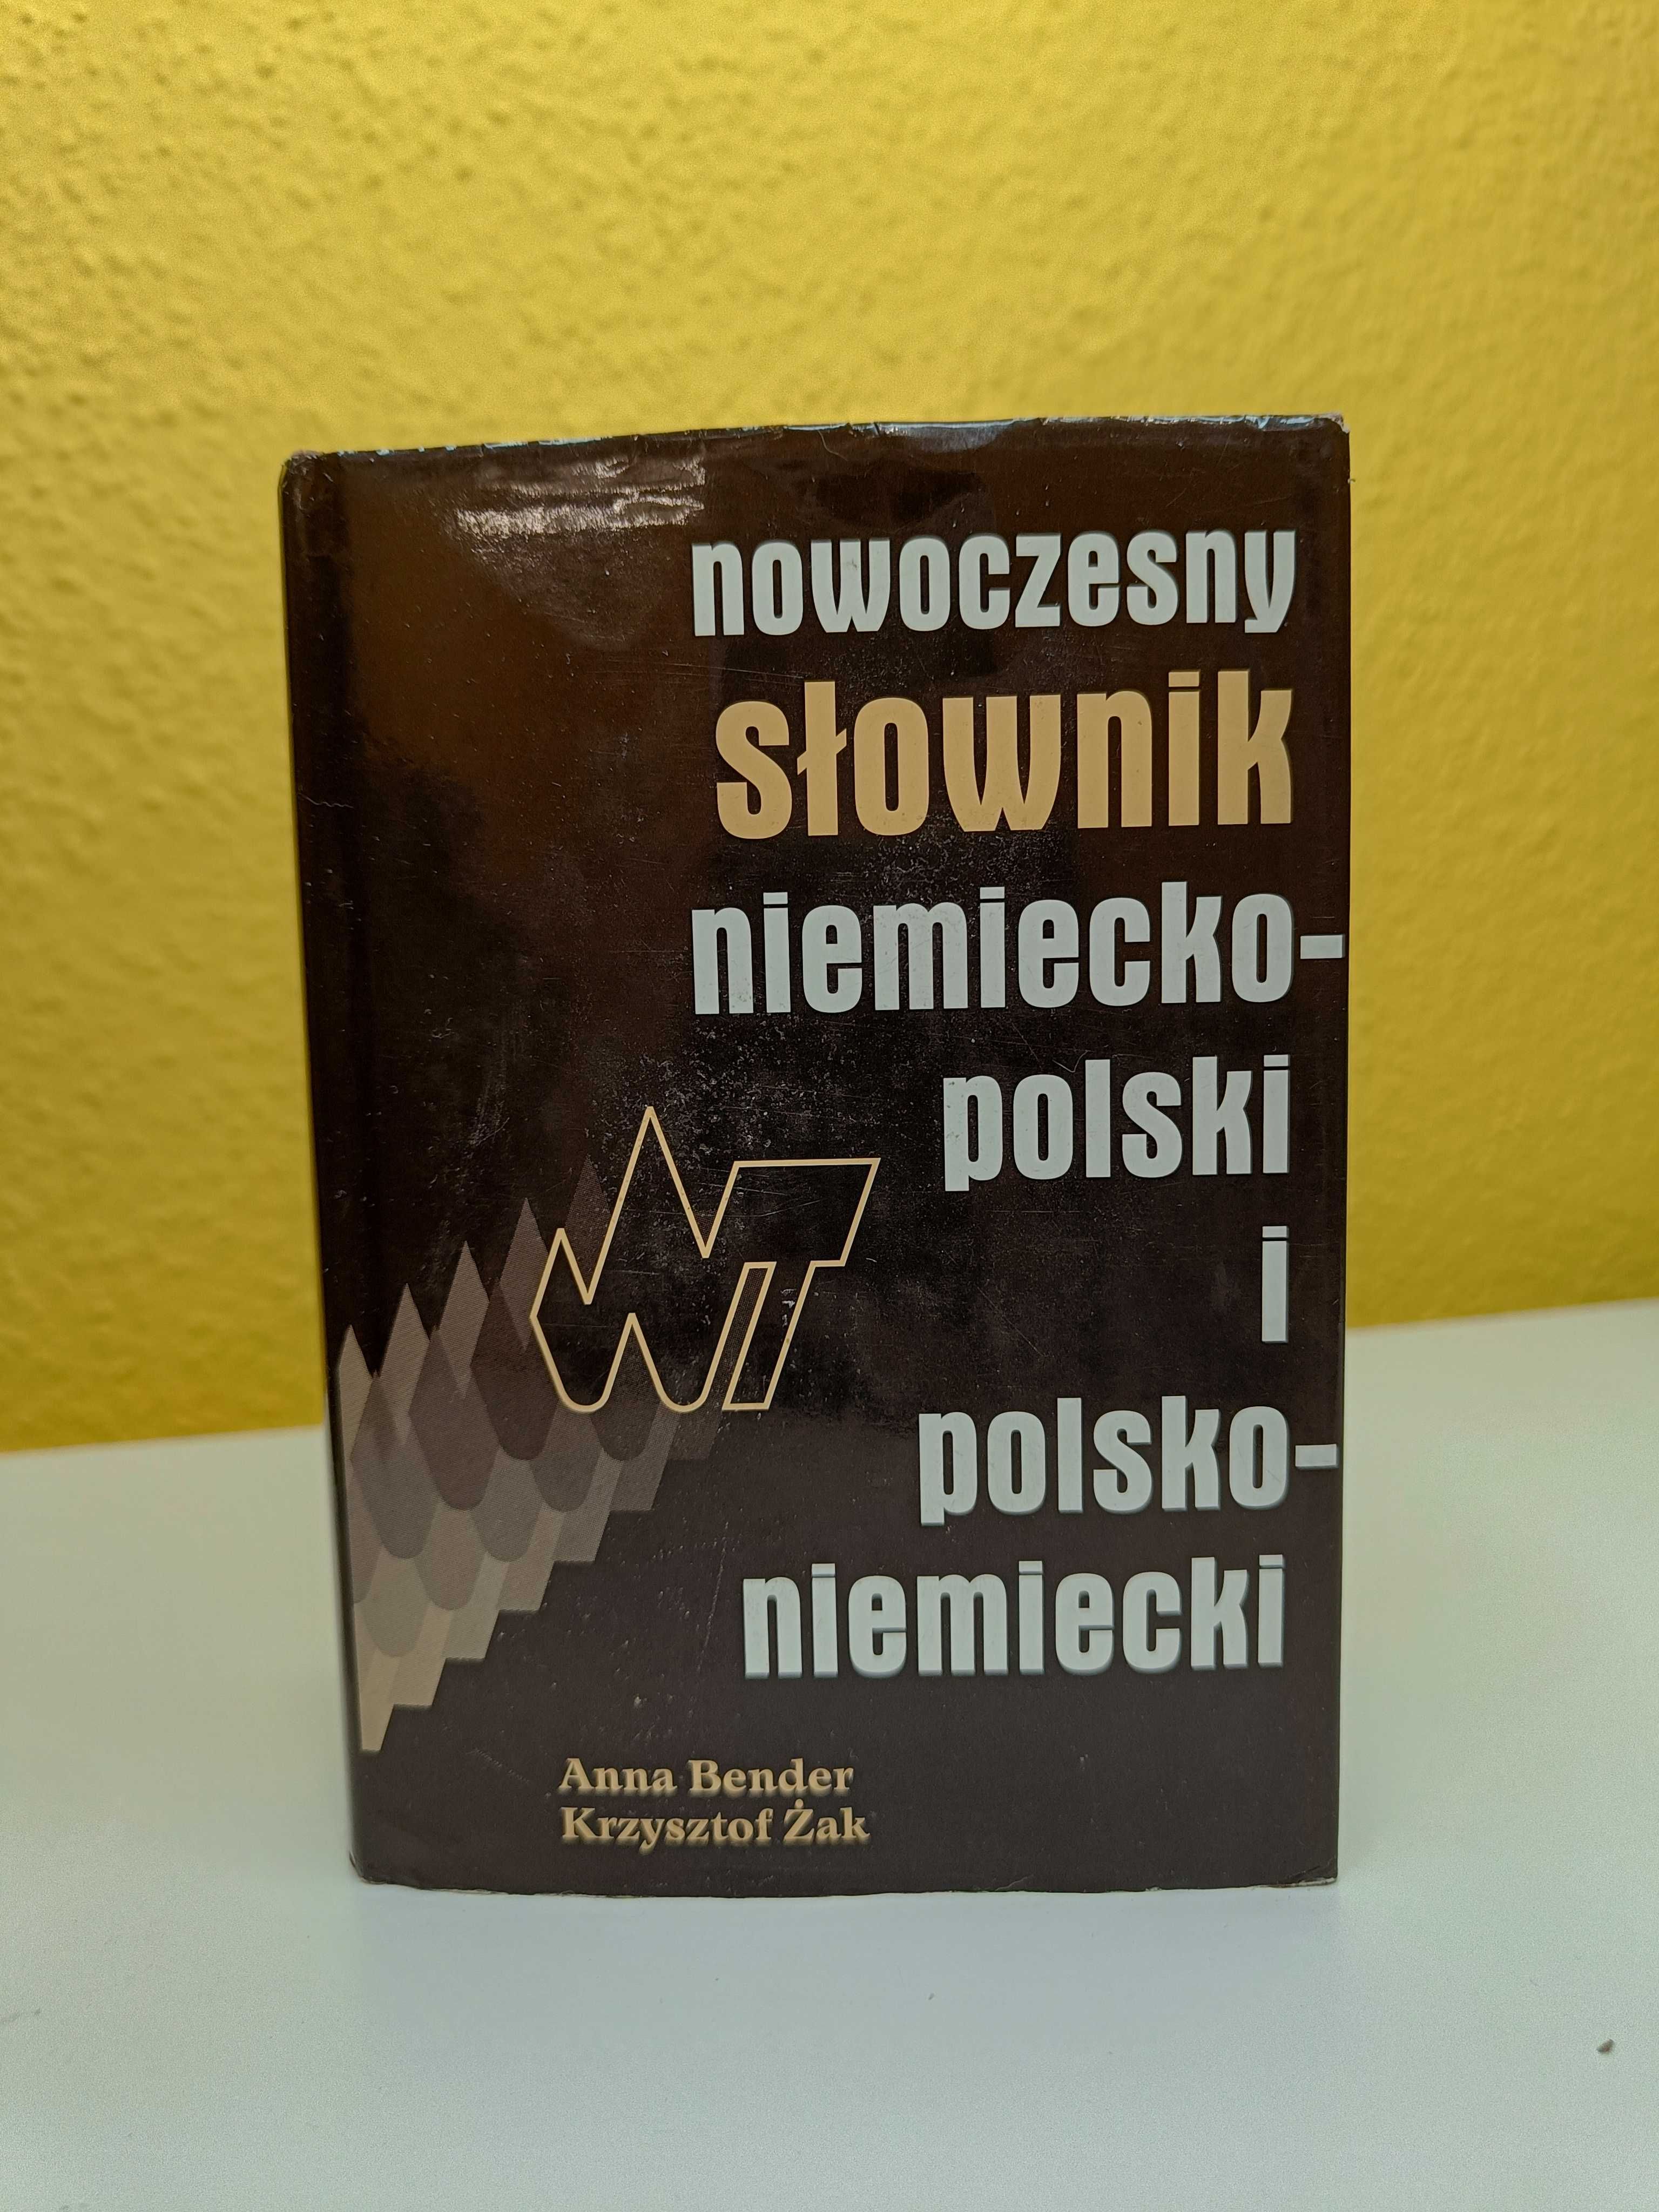 "Nowoczesny słownik niemiecko-polski i polsko-niemiecki"